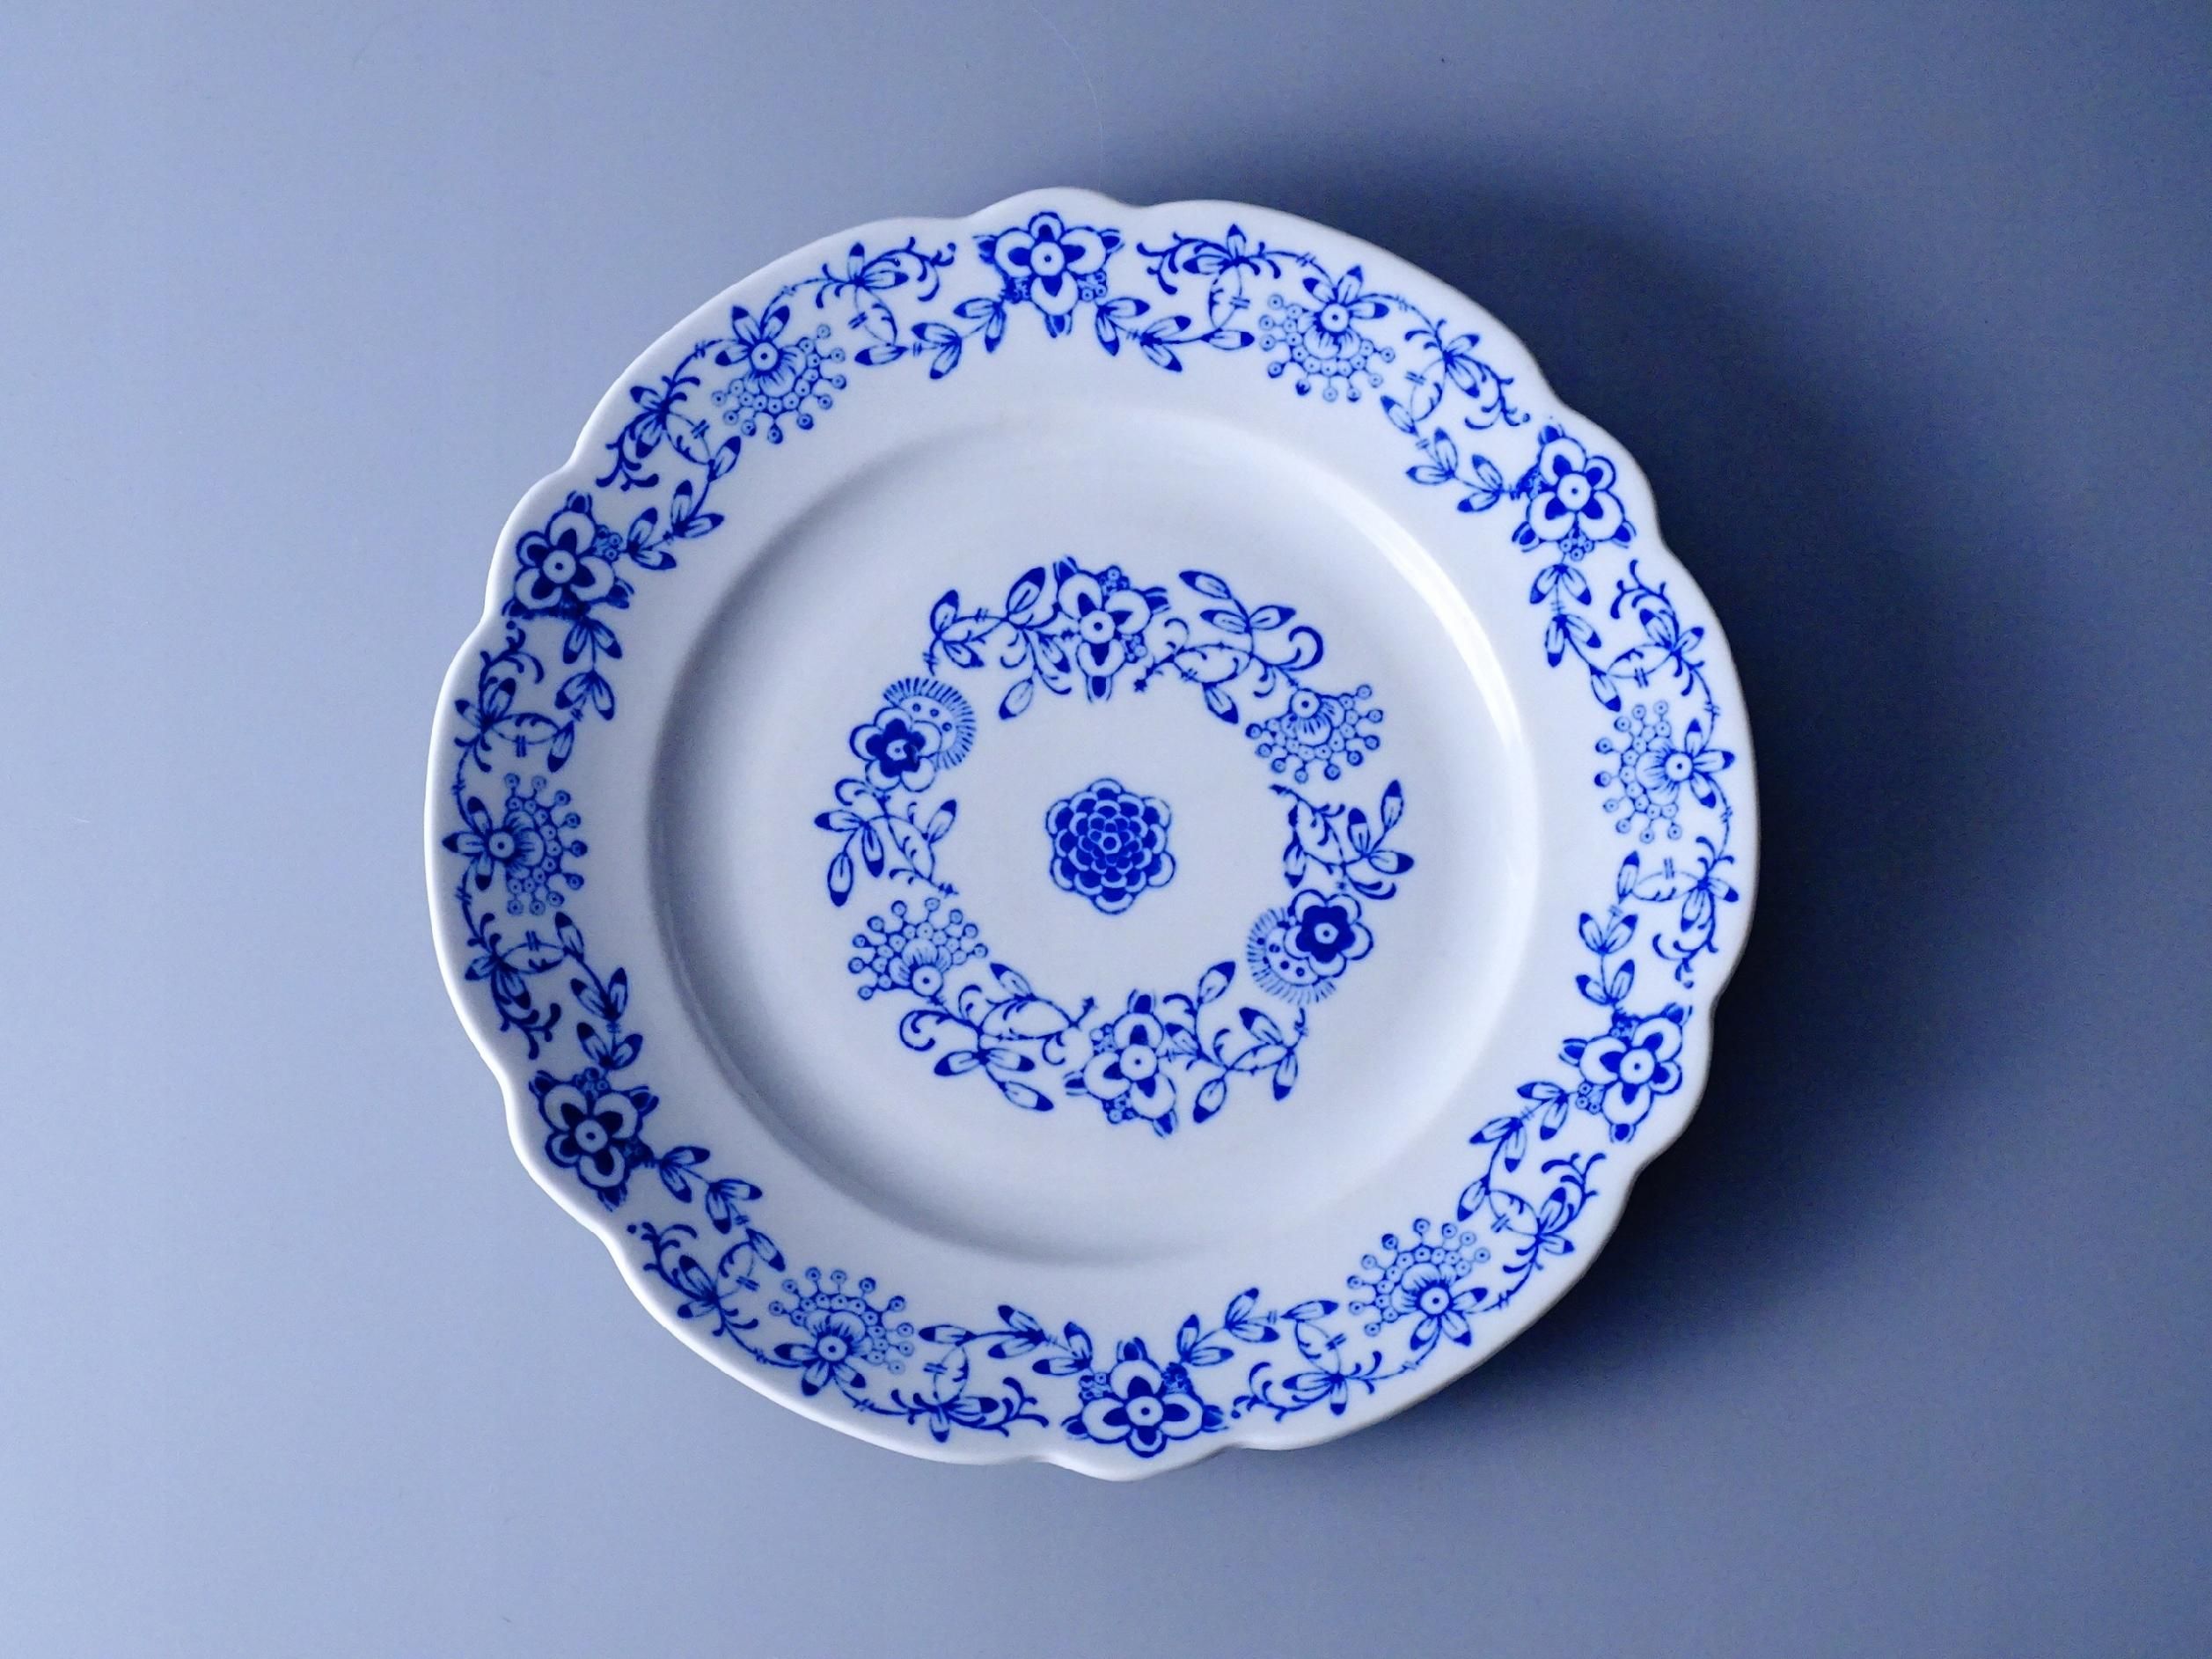 piękny talerz porcelanowy kobaltowy ornament